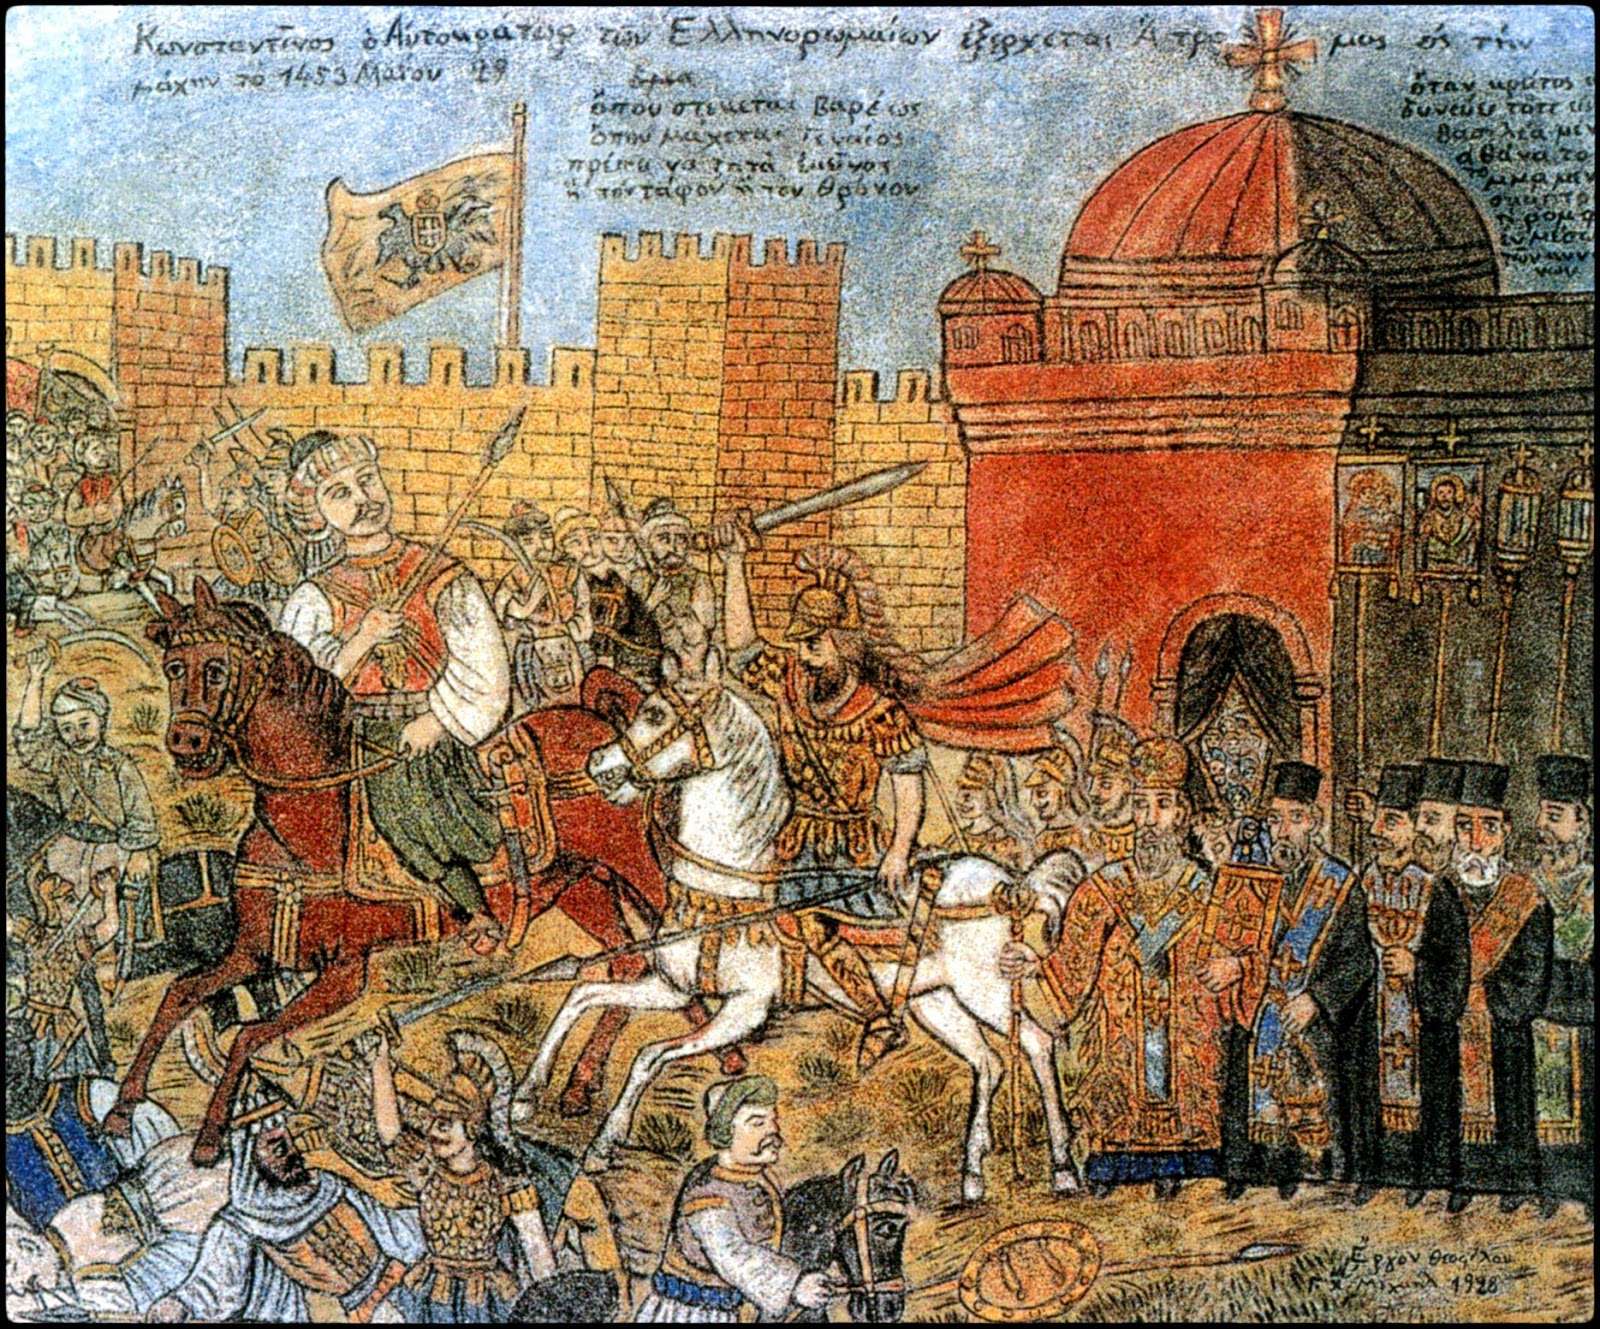 Θεόφιλου,«Κωνσταντίνος ο Αυτοκράτωρ των Ελληνορωμαίων εξέρχεται Ατρομος εις την μάχην το 1453 Μαΐου 29» (1928, τοιχογραφία αποτοιχισμένη από το σπίτι-καφενείο Γ. Αντίκα στη Σκόπελο Γέρας Μυτιλήνης, 141×179 εκ.